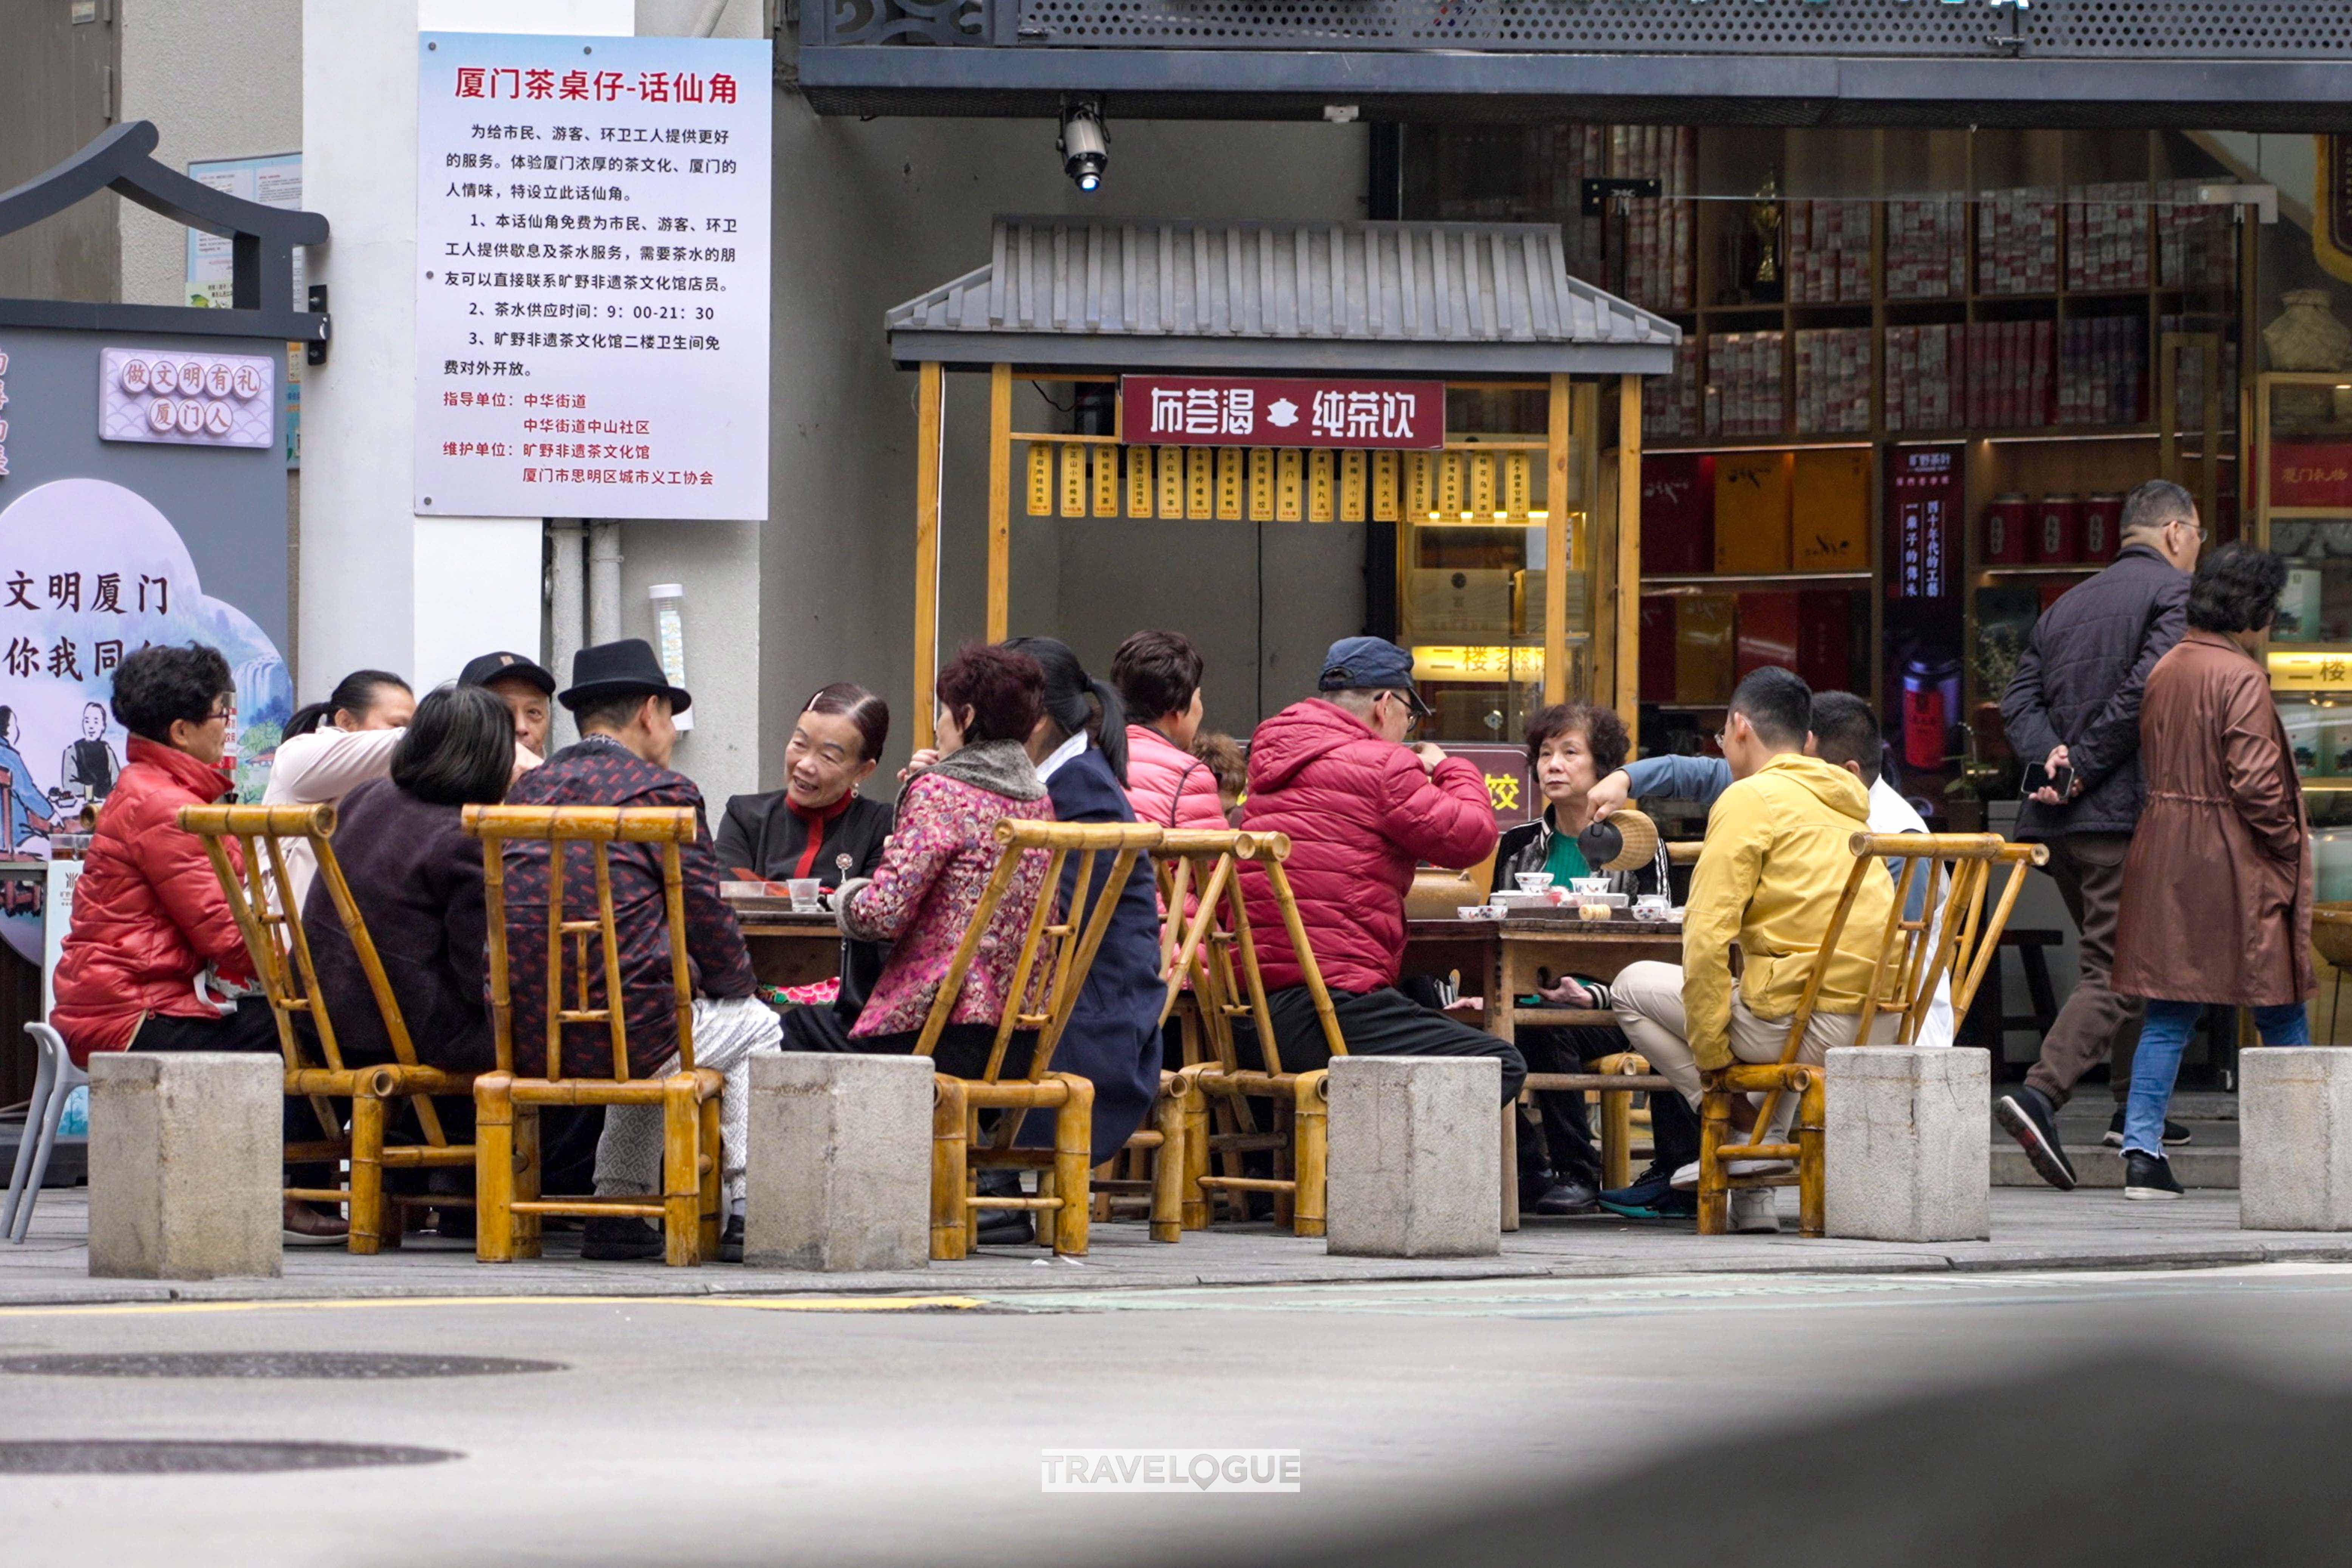 People in Xiamen, Fujian Province, drink tea on the street. /CGTN